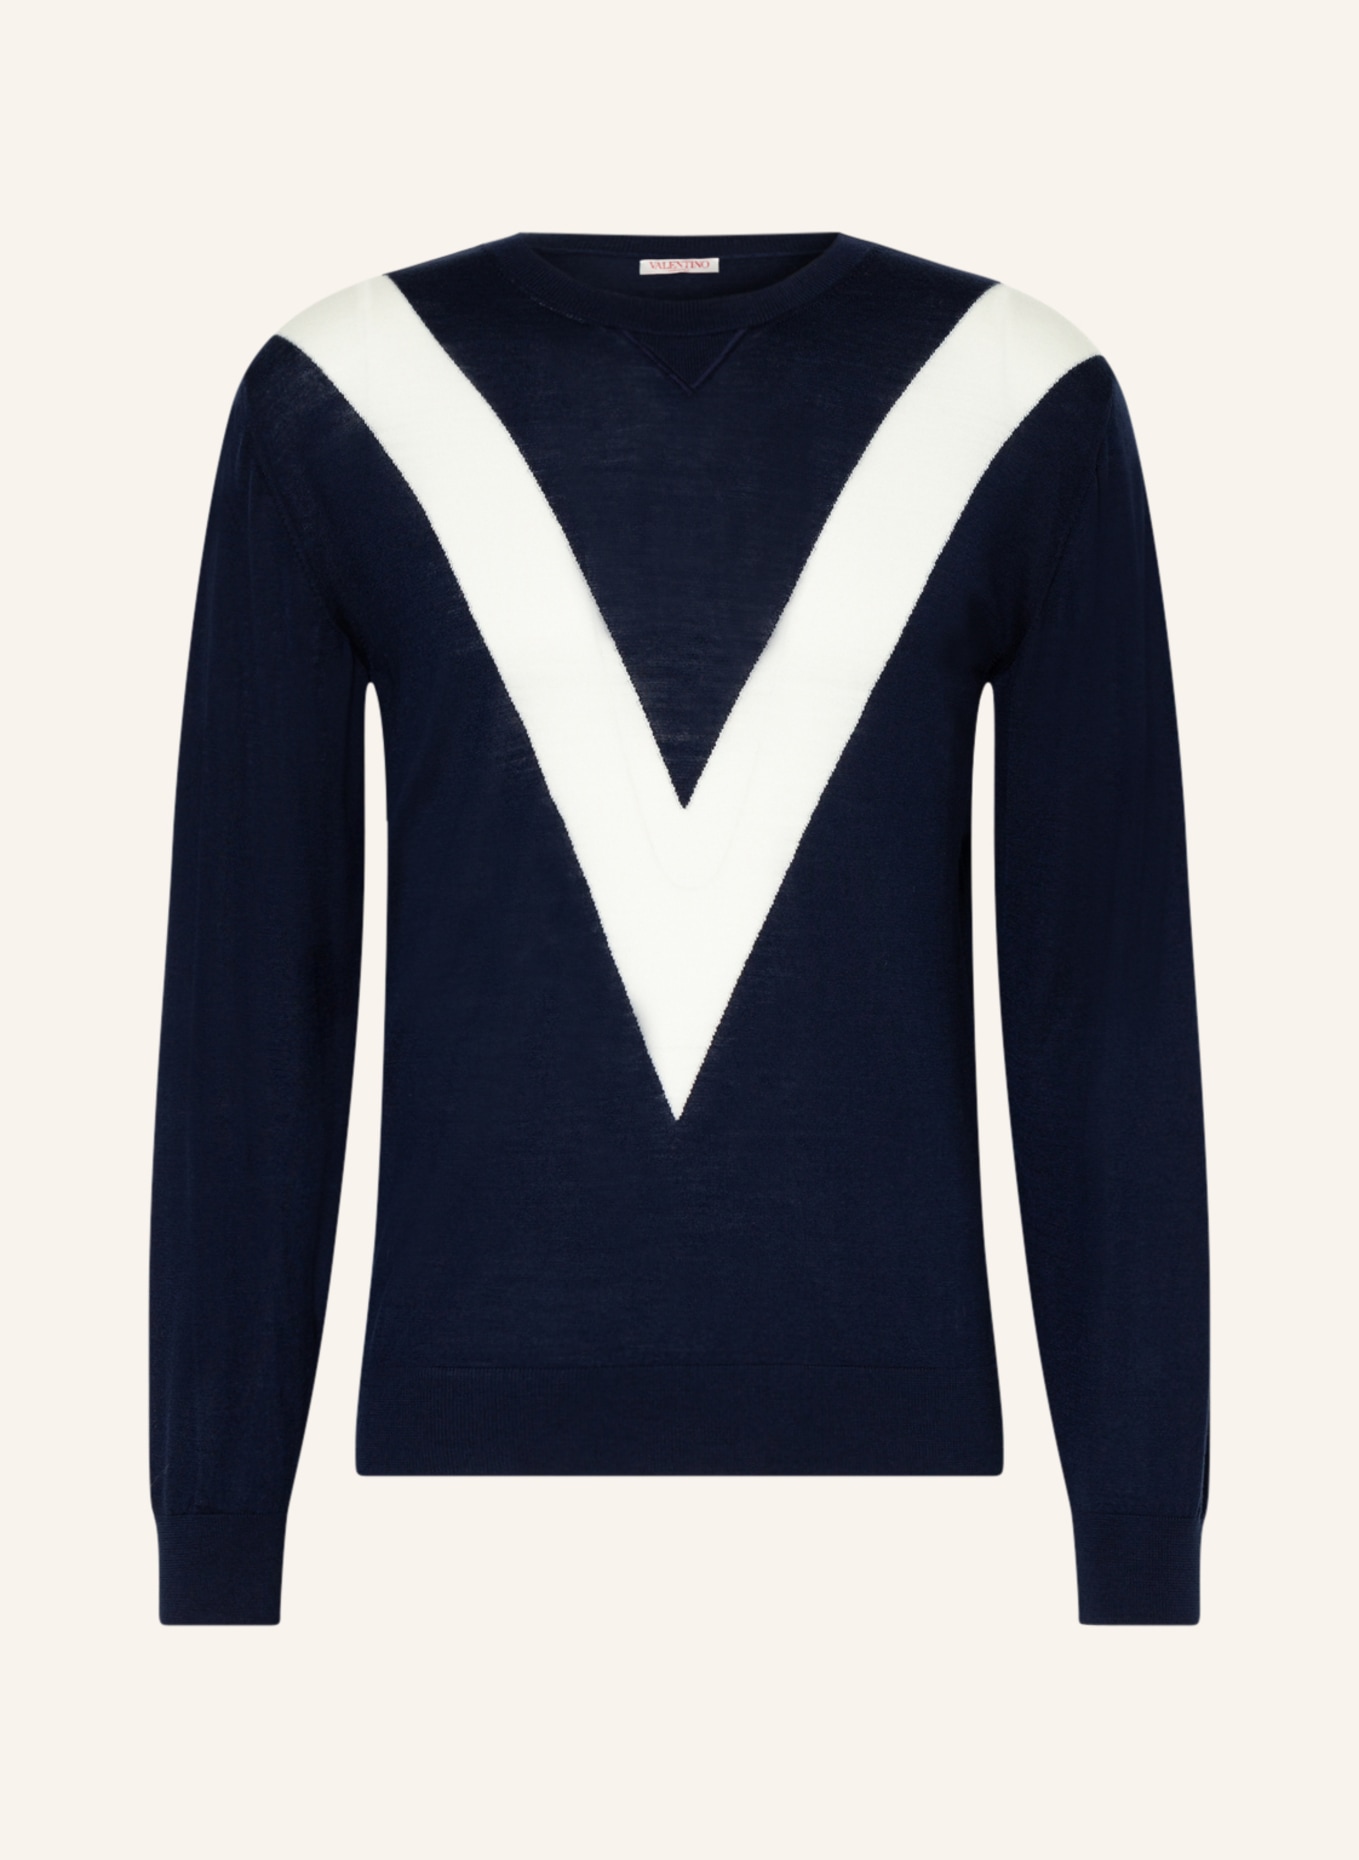 VALENTINO Sweater in blue/ ecru | Breuninger